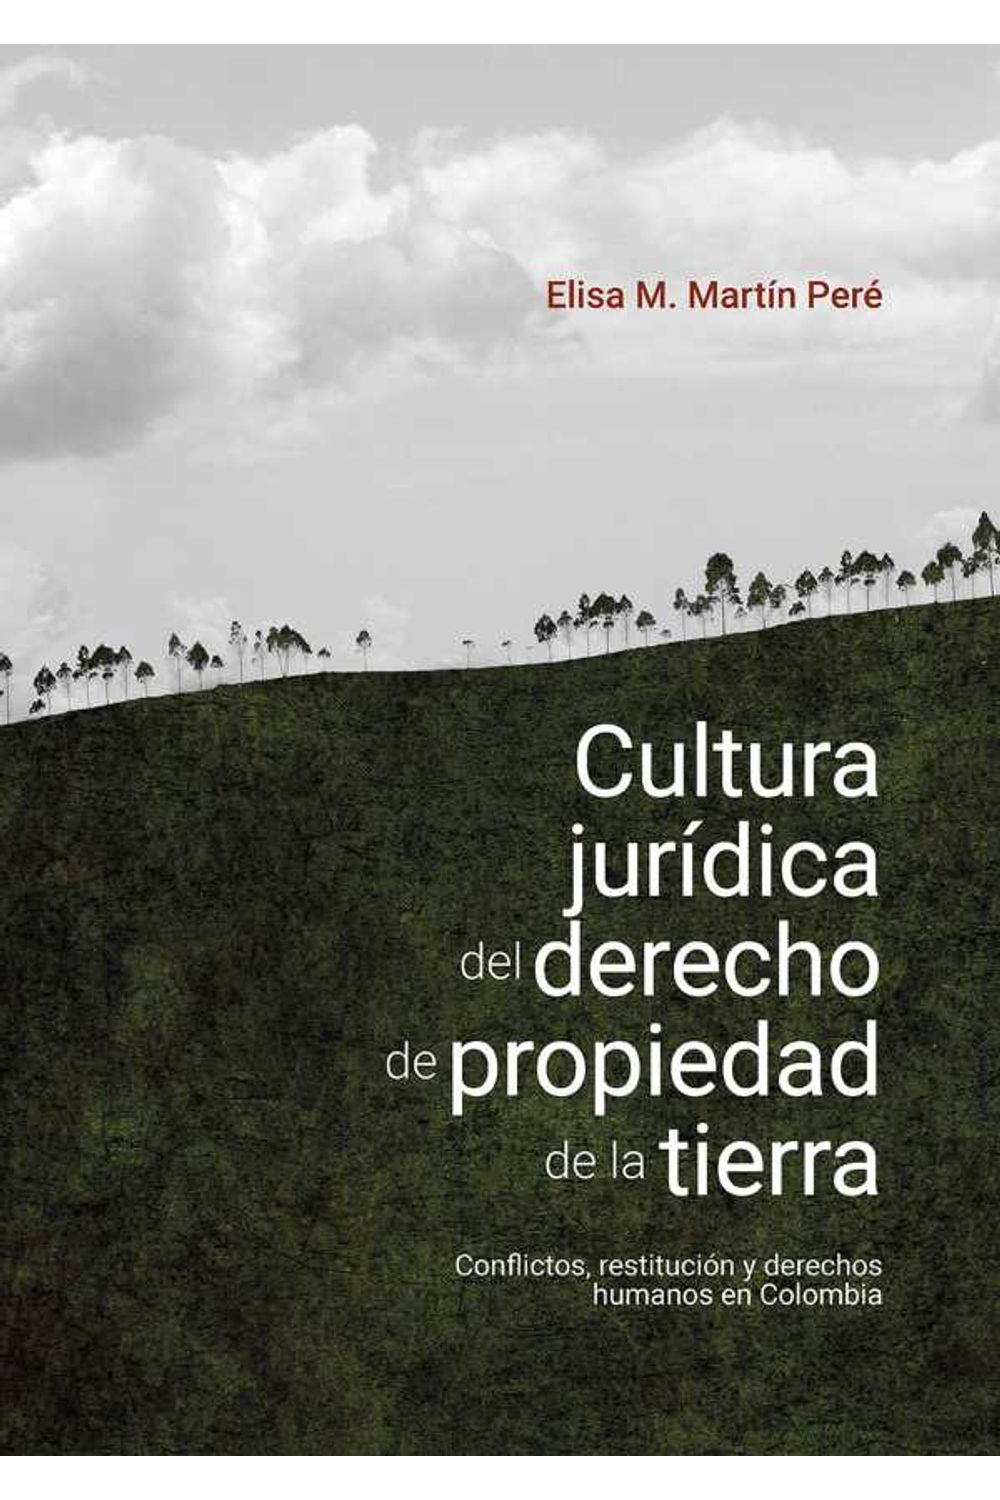 bw-cultura-juriacutedica-del-derecho-de-propiedad-de-la-tierra-editorial-universidad-del-rosario-9789587848083